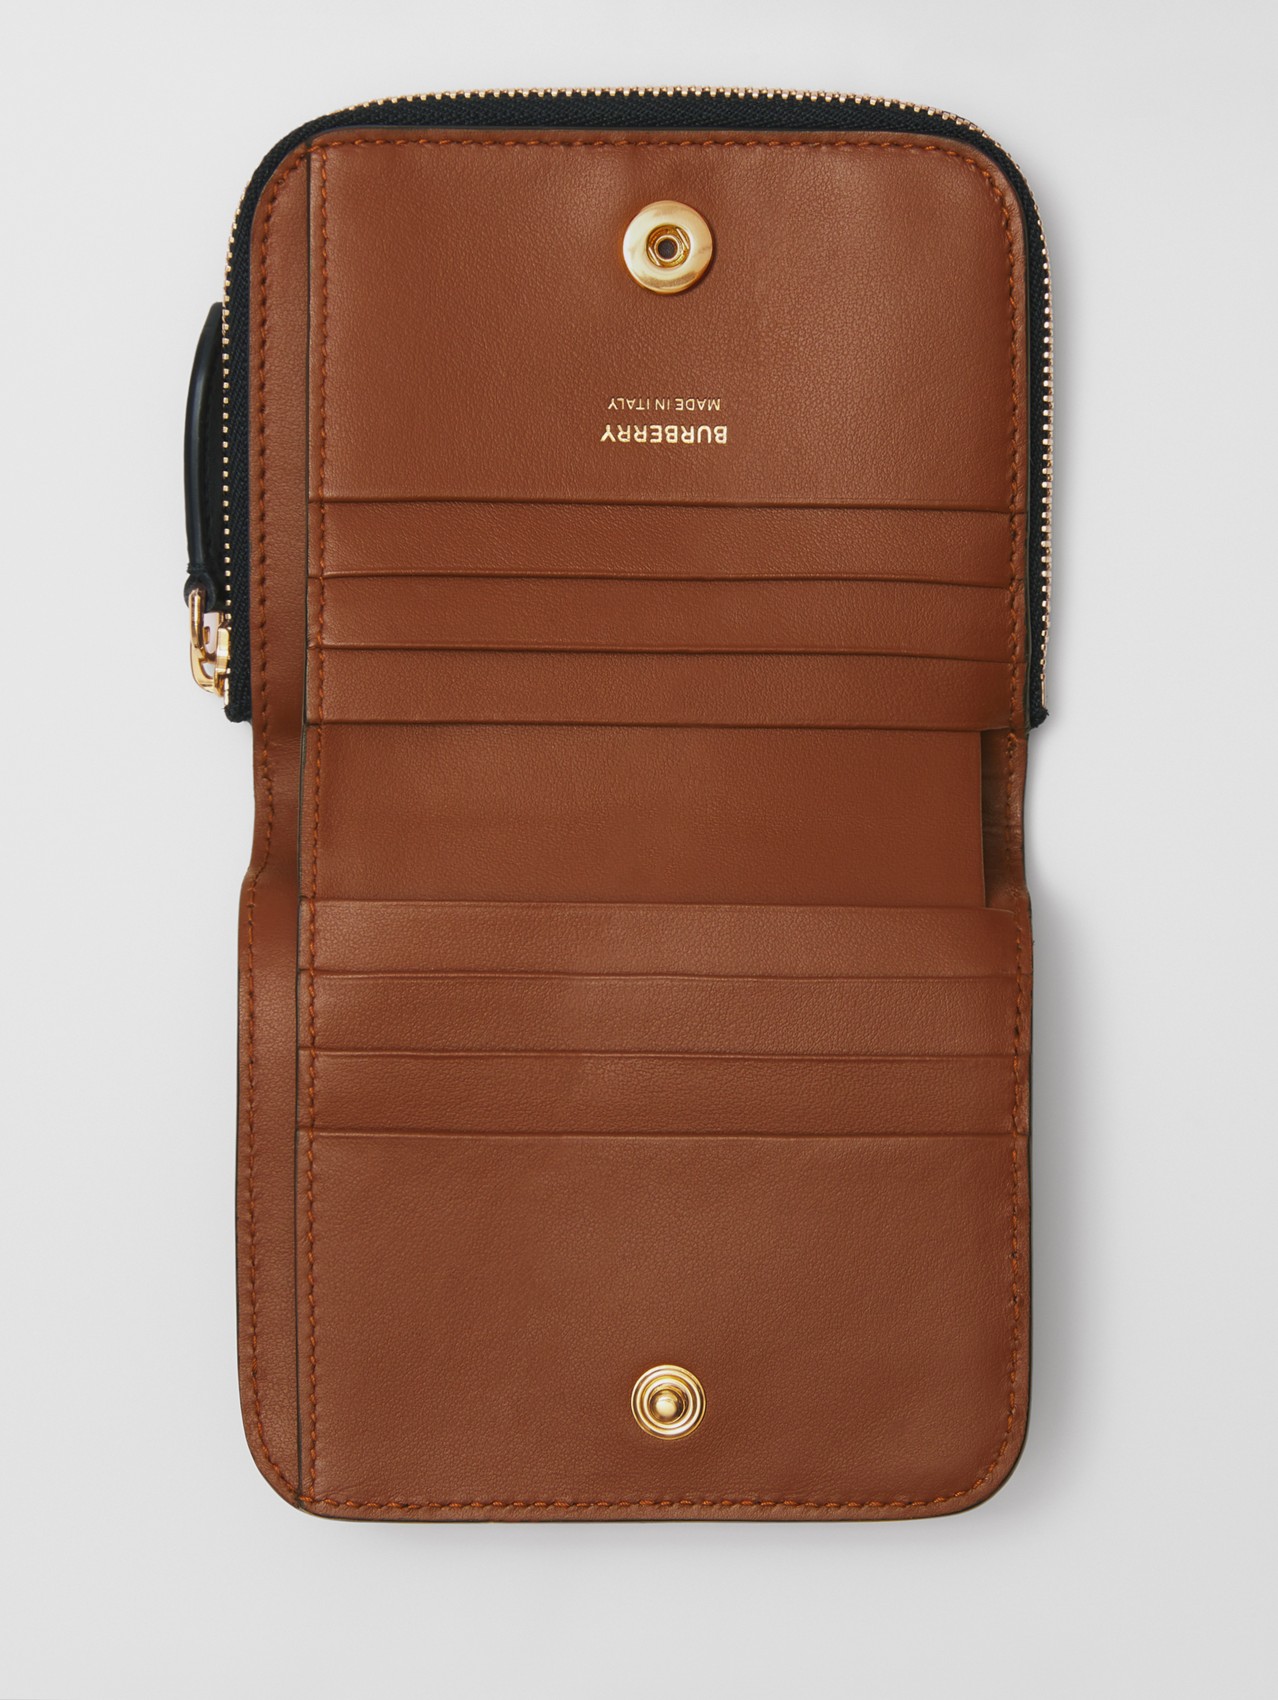 Faltbrieftasche aus Eco-Canvas im Streifendesign und Leder (Vintage-beige)